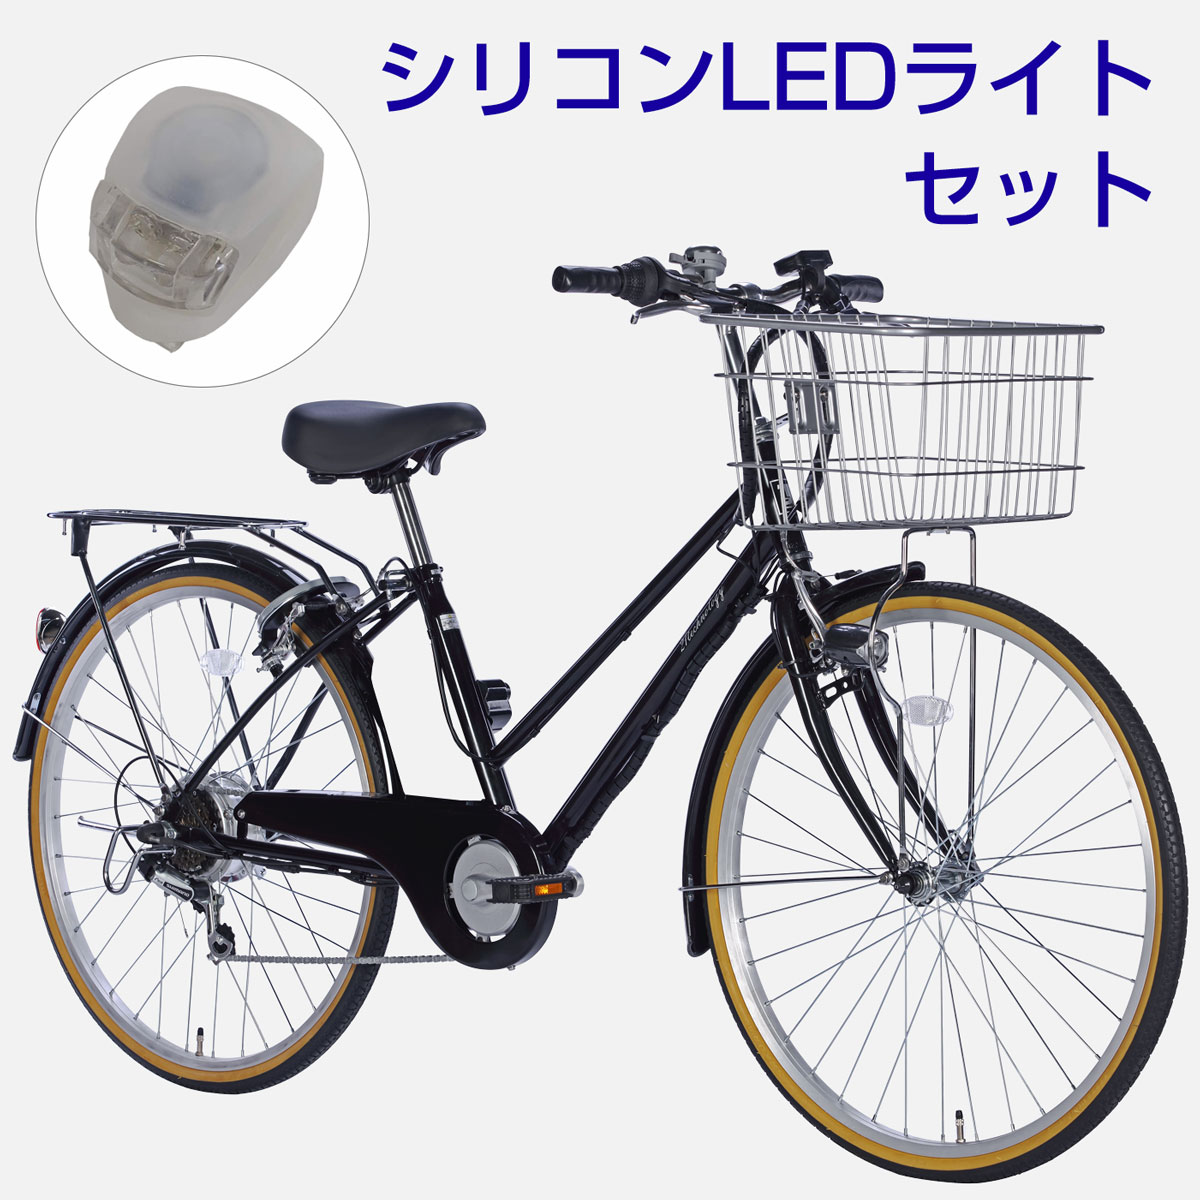 白バッテリ 26インチ電動アシスト自転車 DACT266 ライトセット